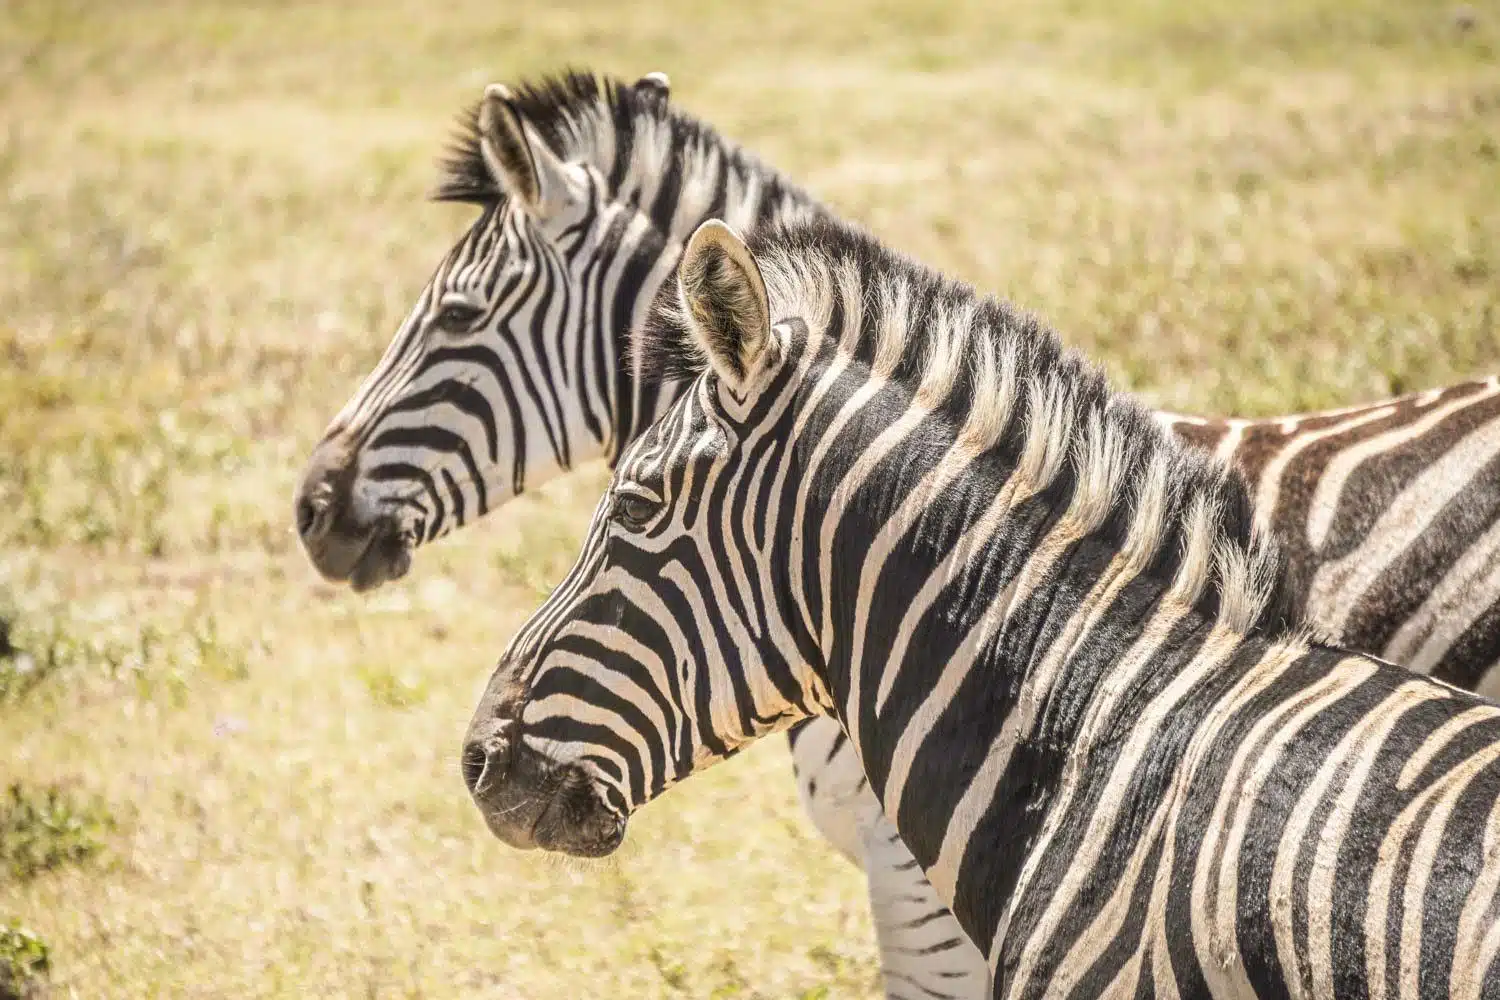 Zebras in Addo Elephant National Park